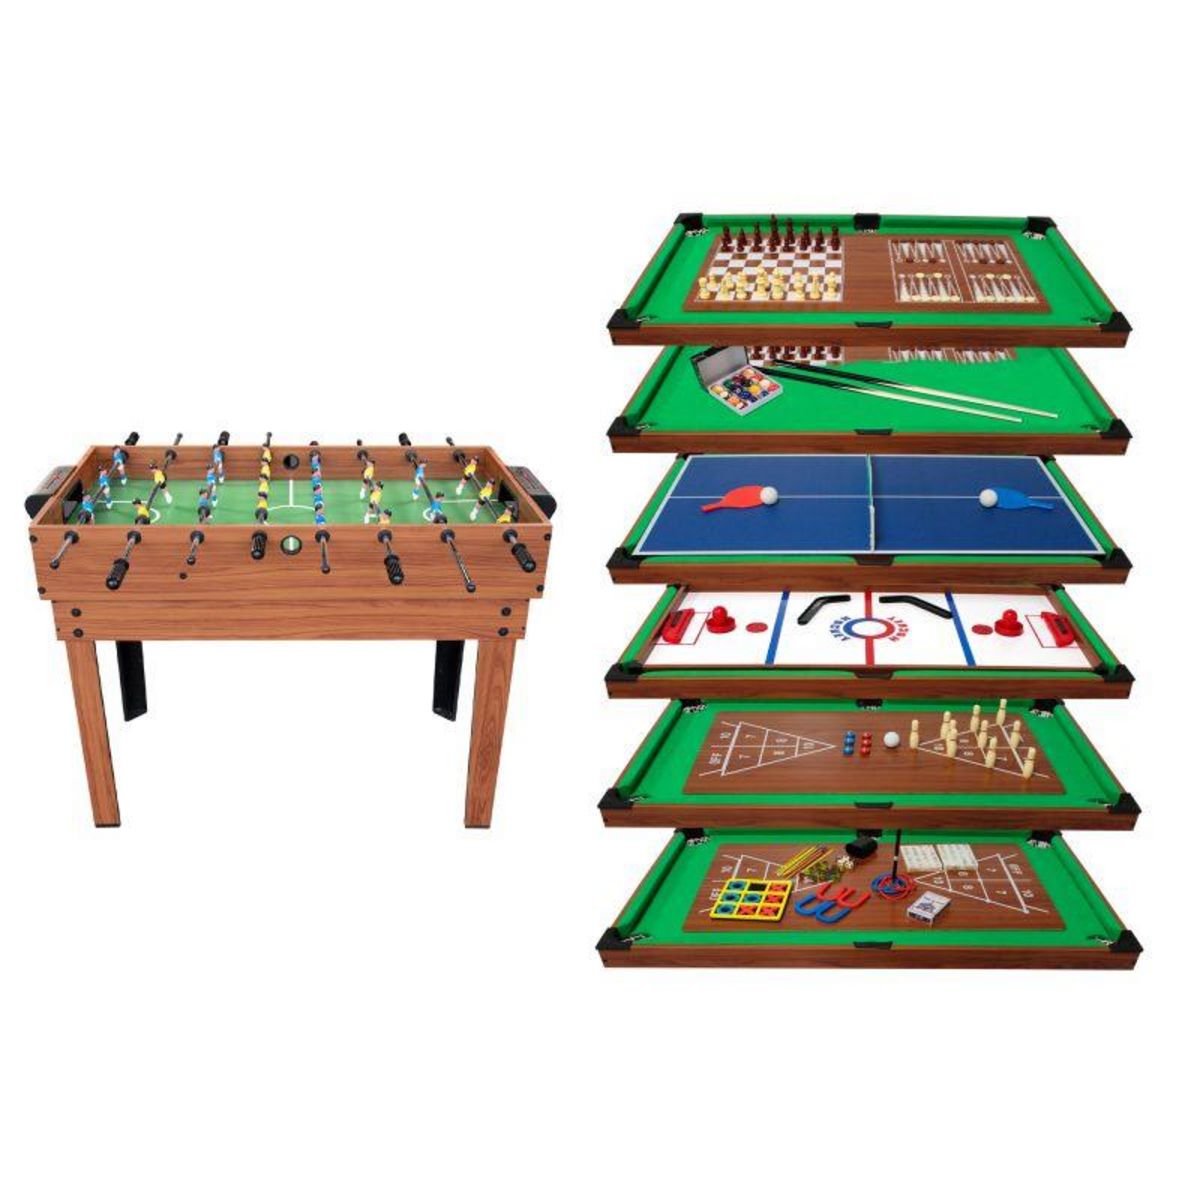 PLAY4FUN Table Multi Jeux 20 en 1 sur Pied, Multifonction avec Plateaux  Modulables et Accessoires pour 20 jeux différents, 122x61x84 cm pas cher 